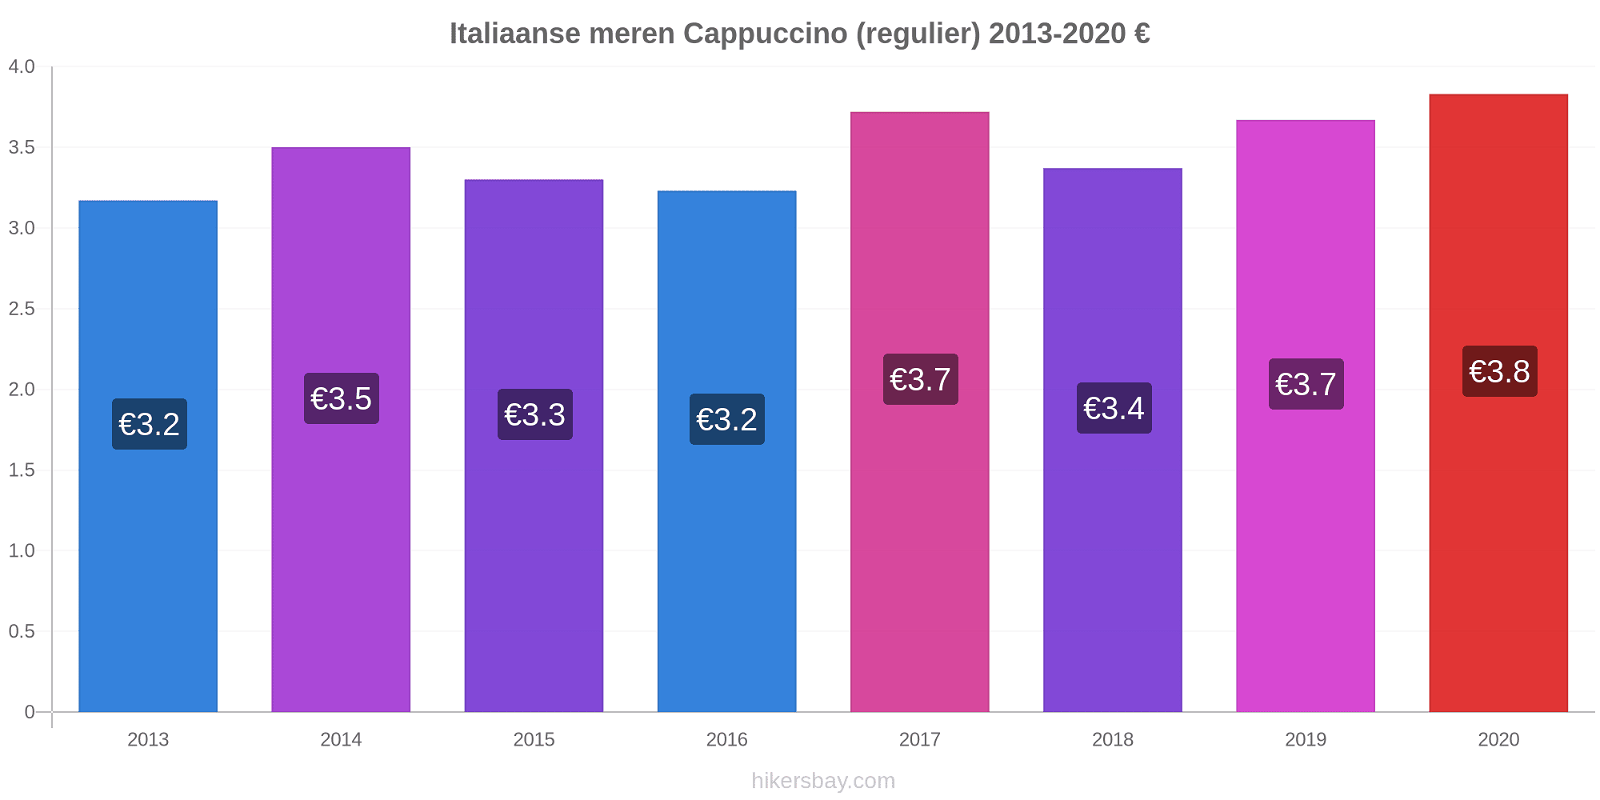 Italiaanse meren prijswijzigingen Cappuccino (regelmatige) hikersbay.com